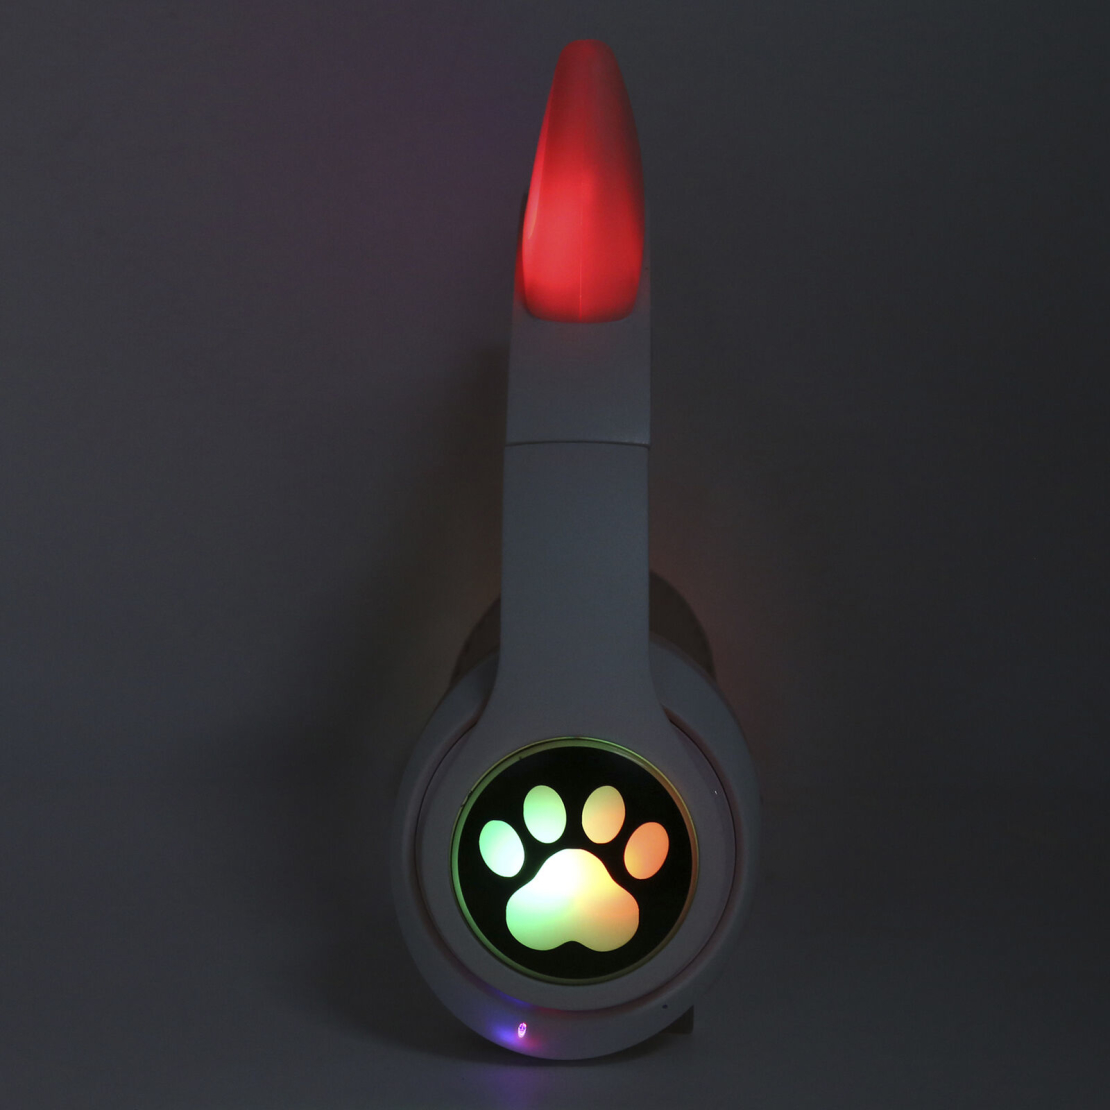 Безжични слушалки Cat Ear M2: Съчетание на стил и качество в уникален дизайн с котешки уши